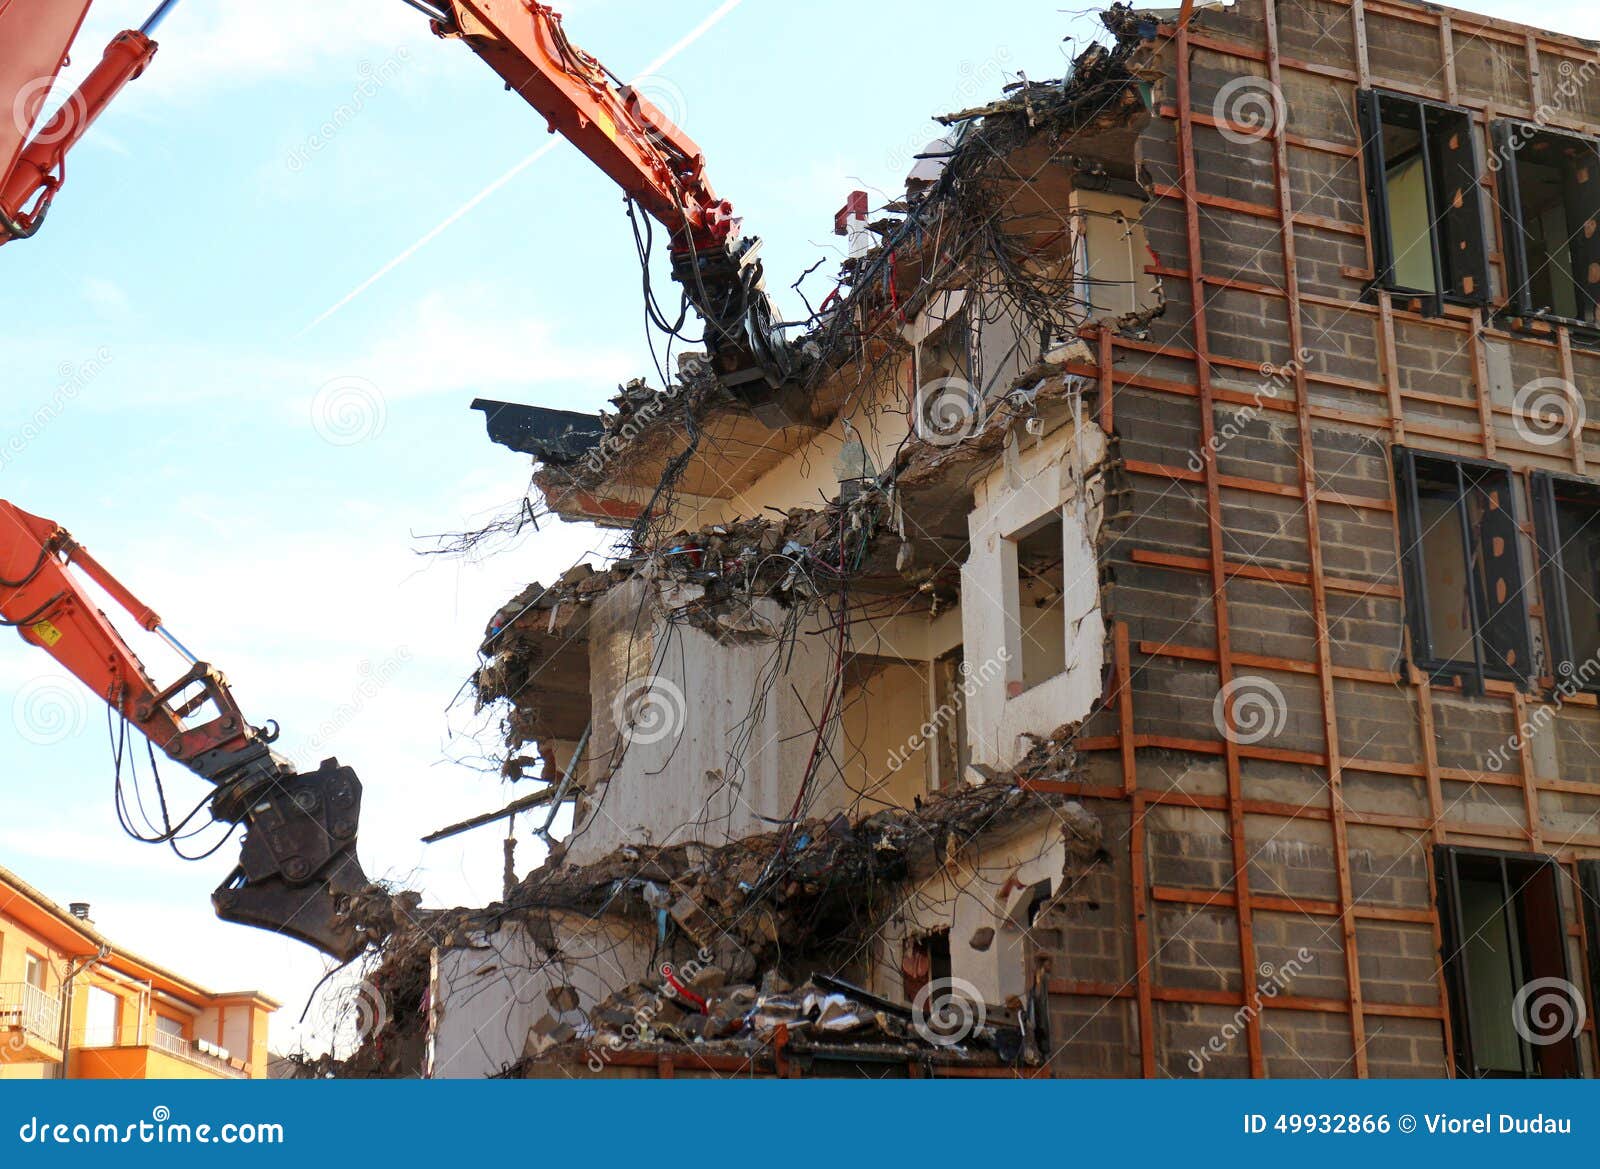 demolished building